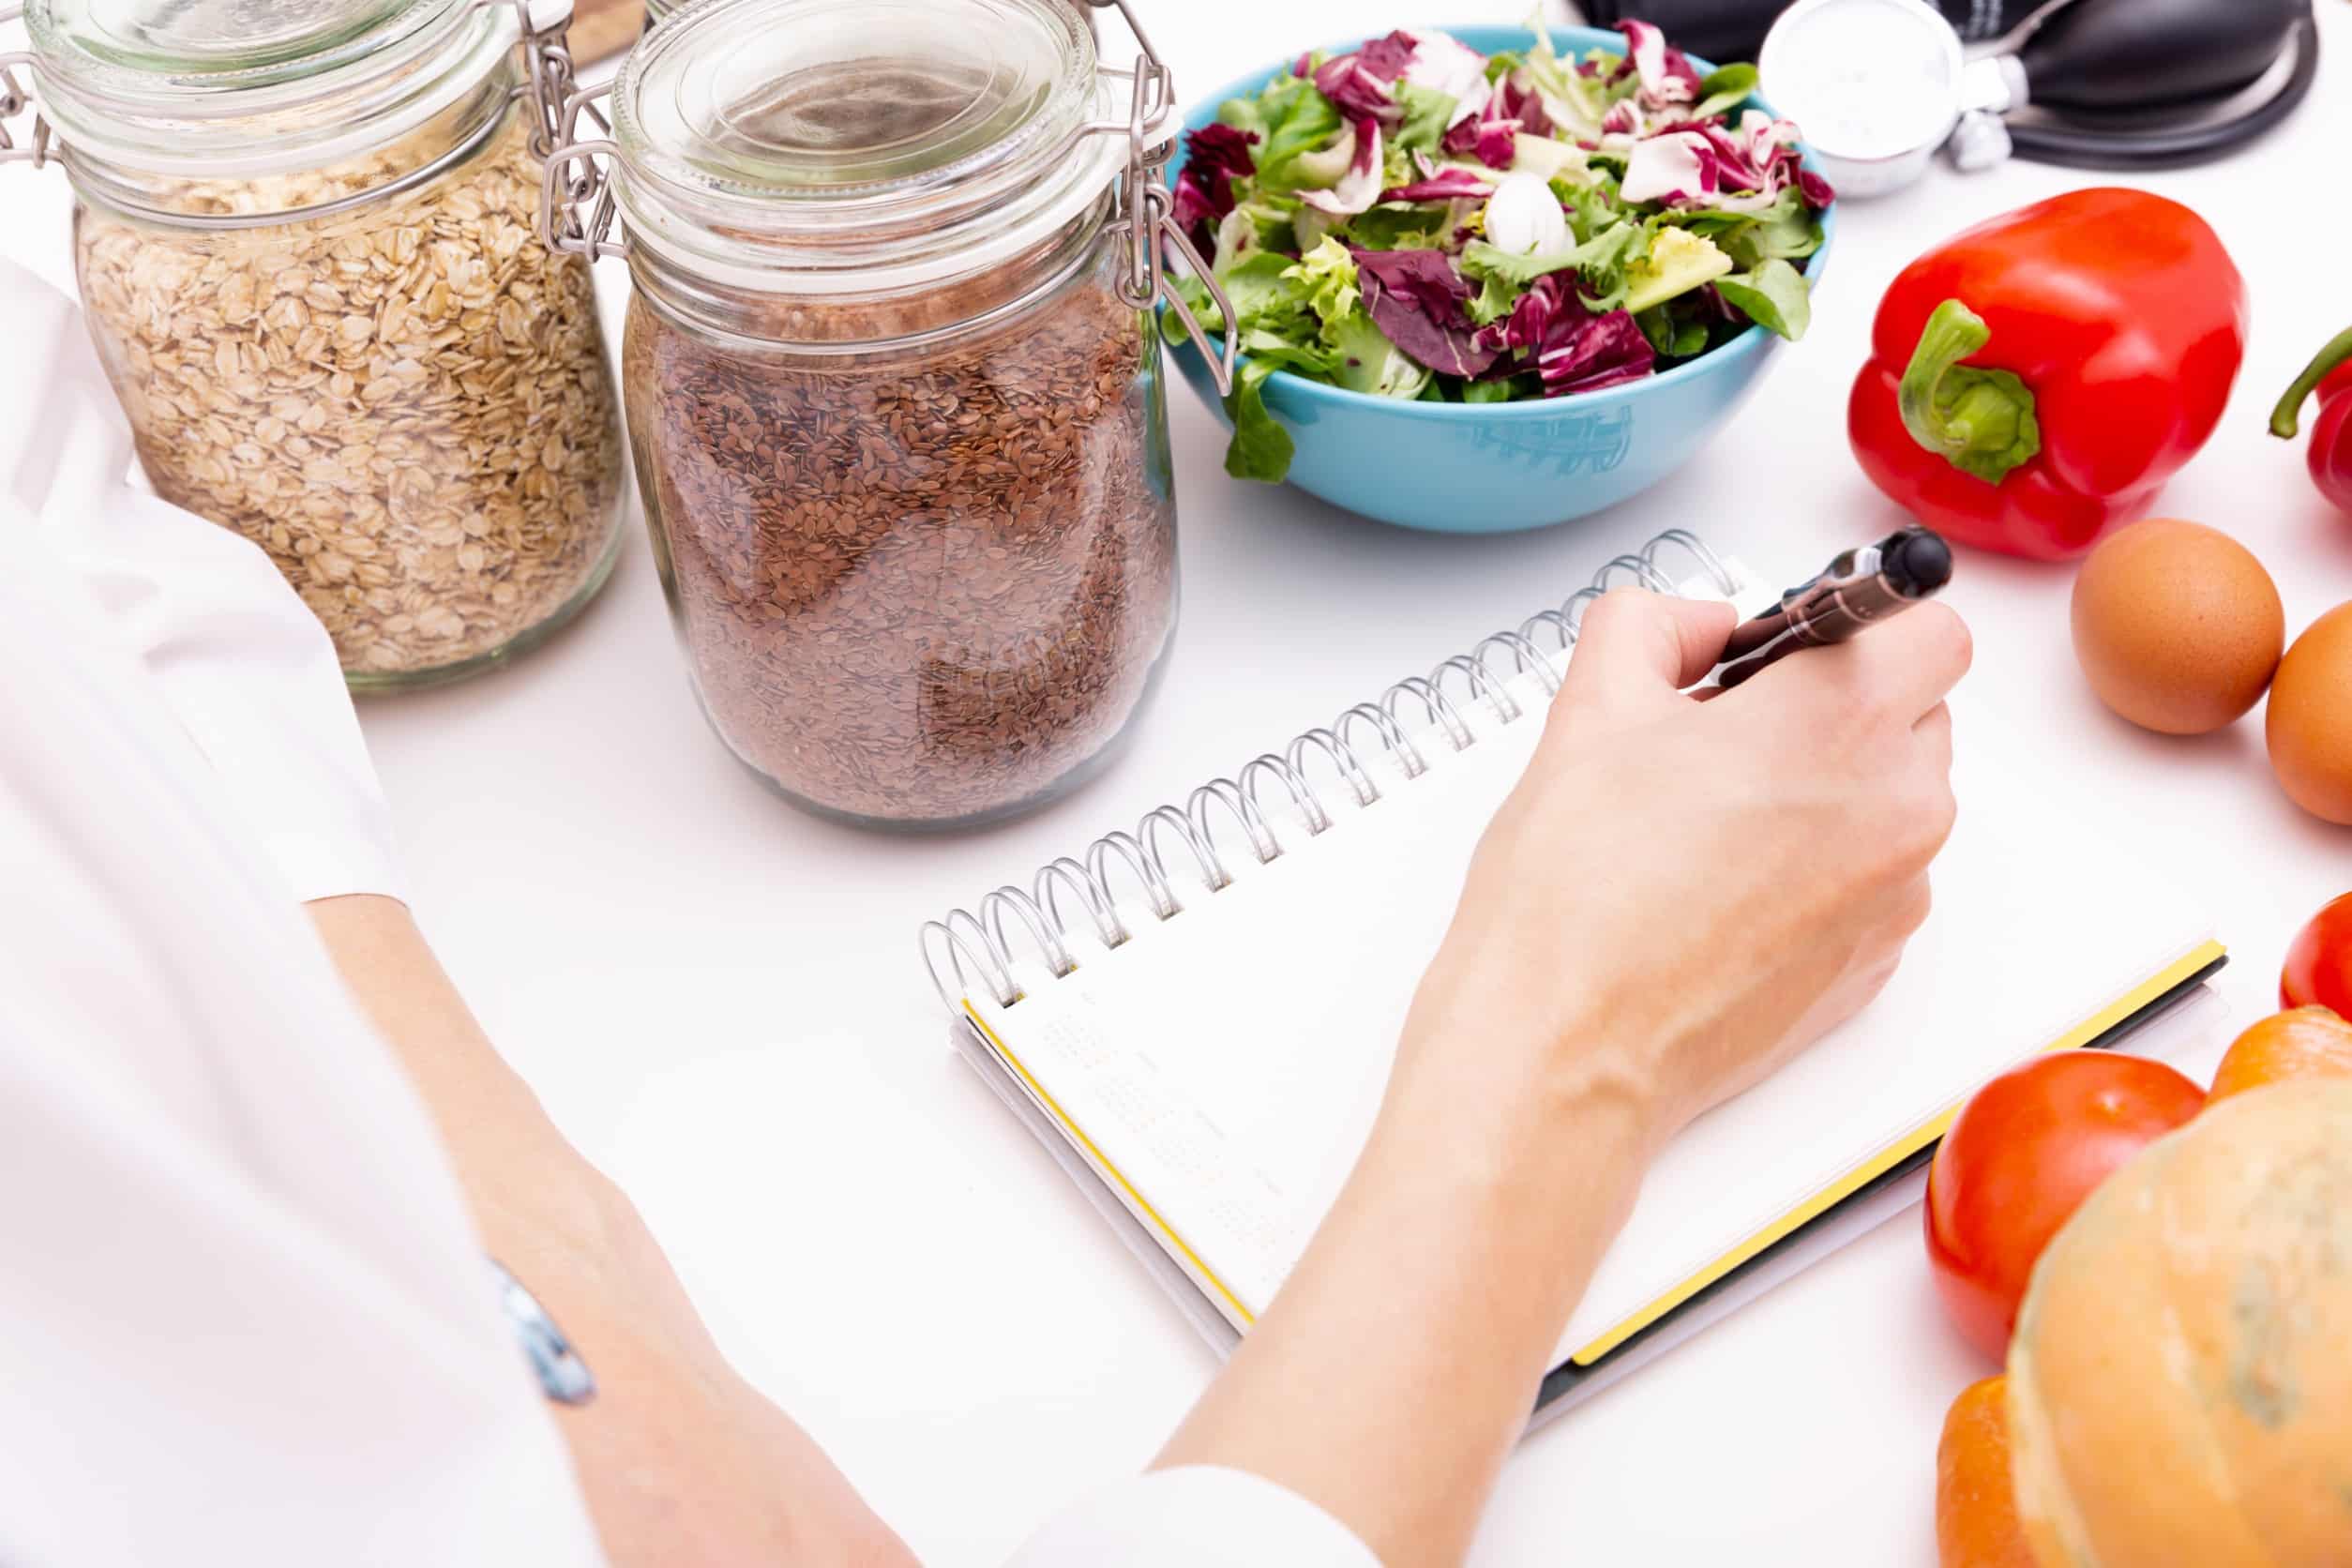 Les mains d'un nutritionniste écrivant dans un calepin posé sur un bureau avec des bocaux remplis de céréales, un bol de salade, des œufs et des légumes.